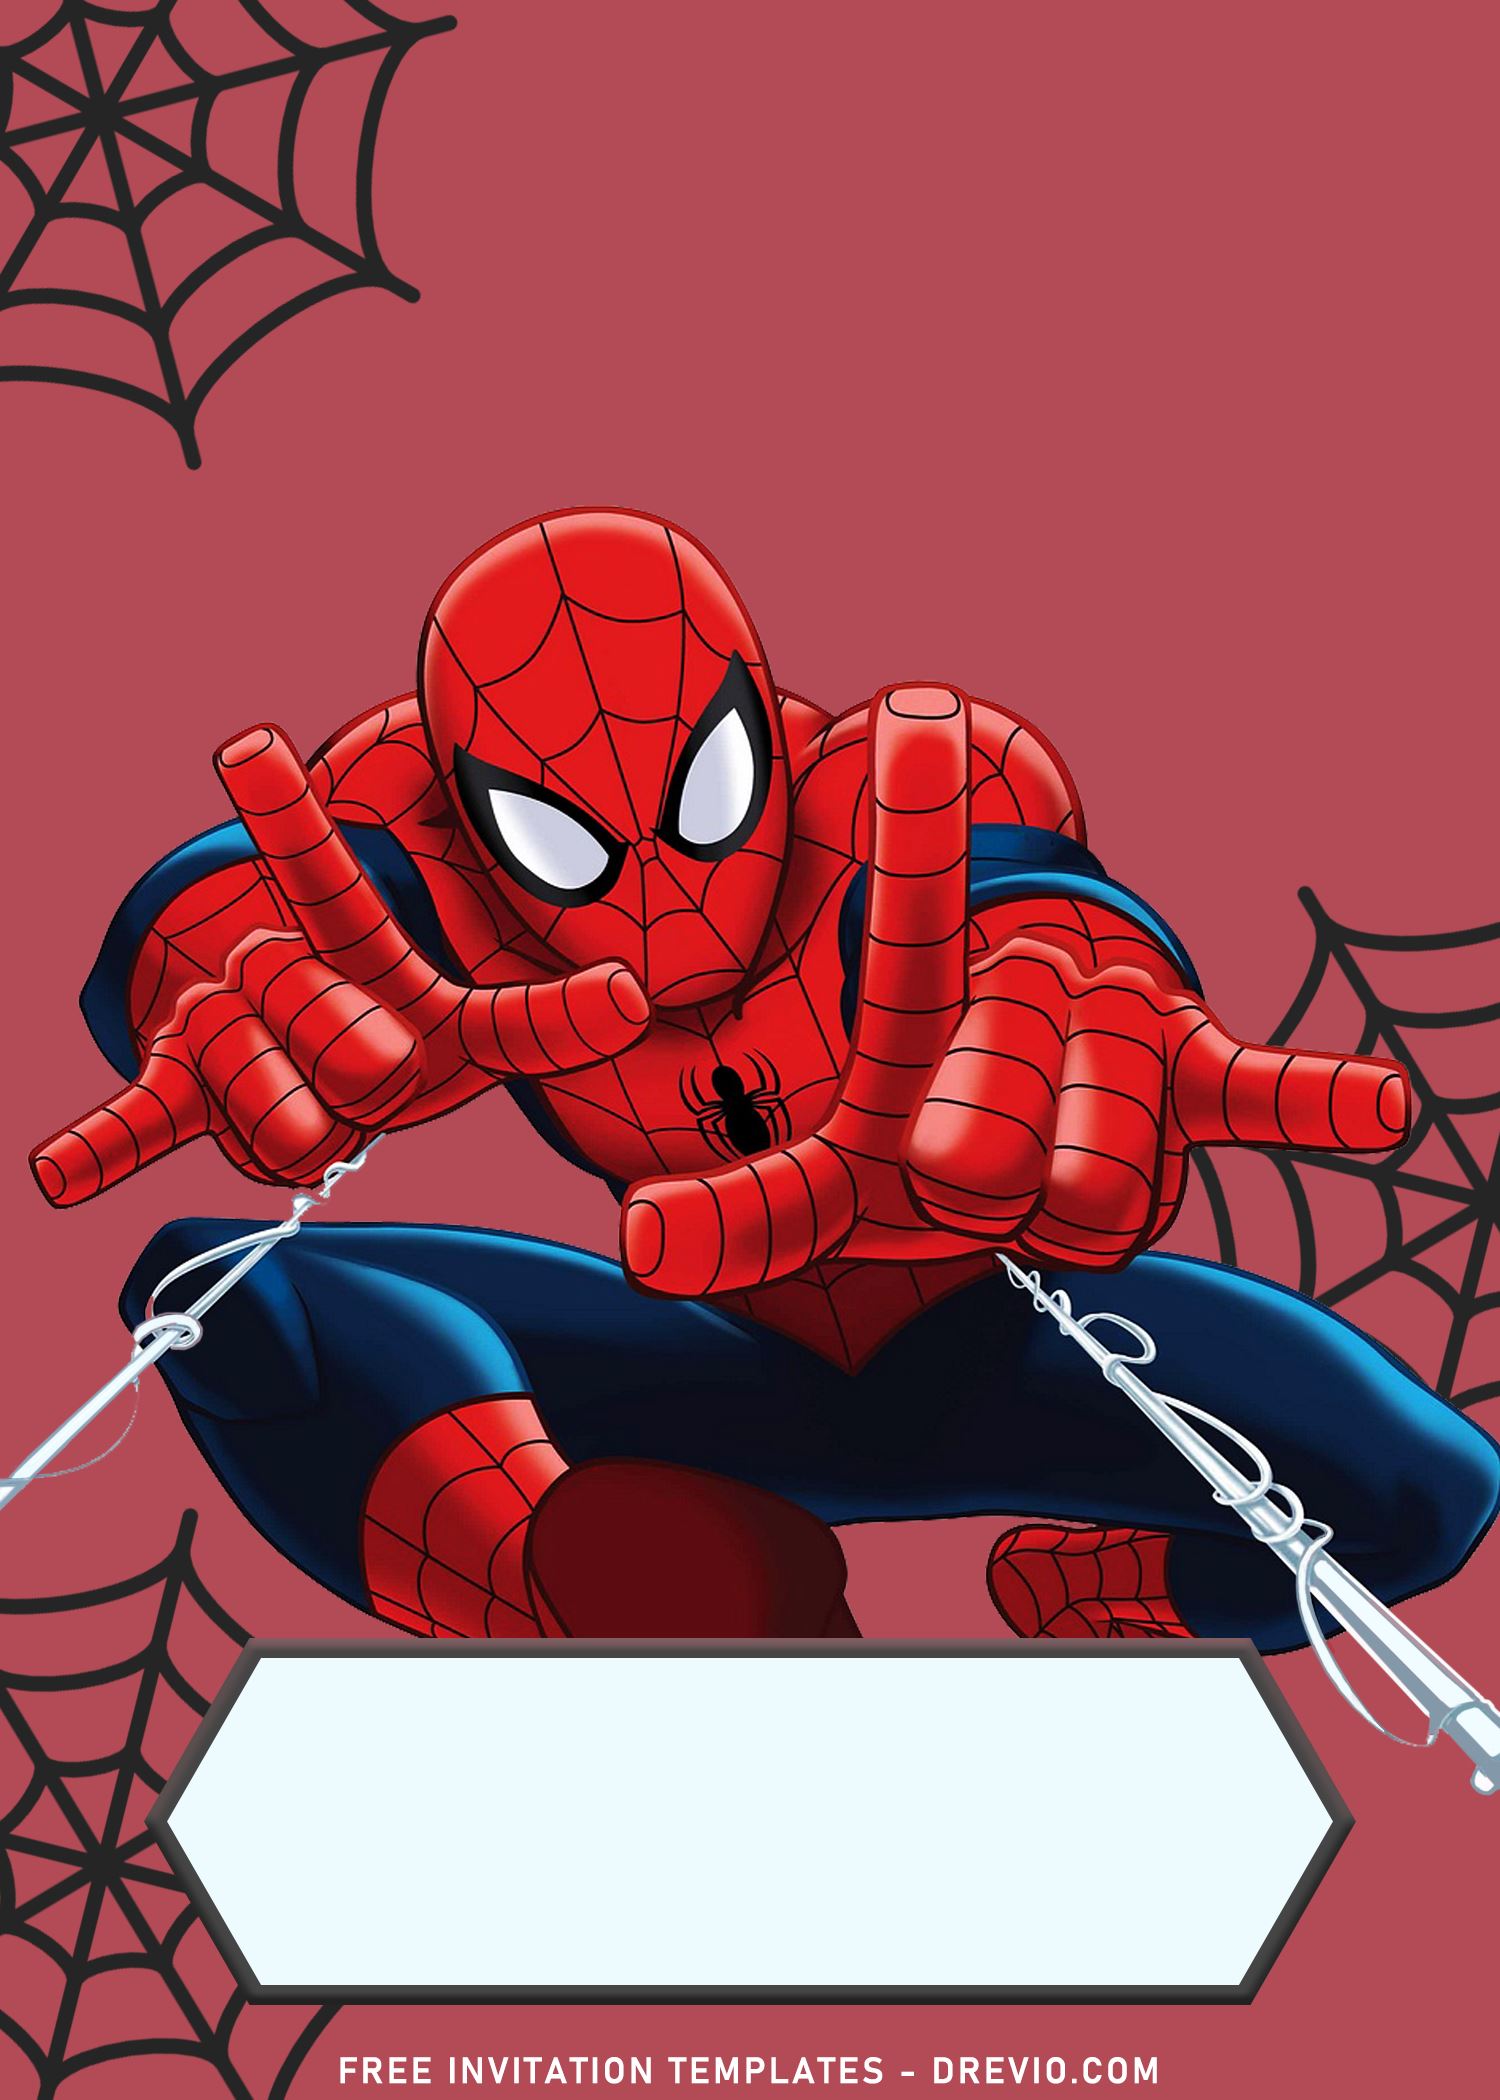 Hình nền Marvel Spiderman đã và đang là một trong những chủ đề phổ biến nhất dành cho fan siêu anh hùng. Với nhiều mẫu màu xanh, phim và TV, sản phẩm này cung cấp sự đa dạng cho các fan hâm mộ của Người Nhện.